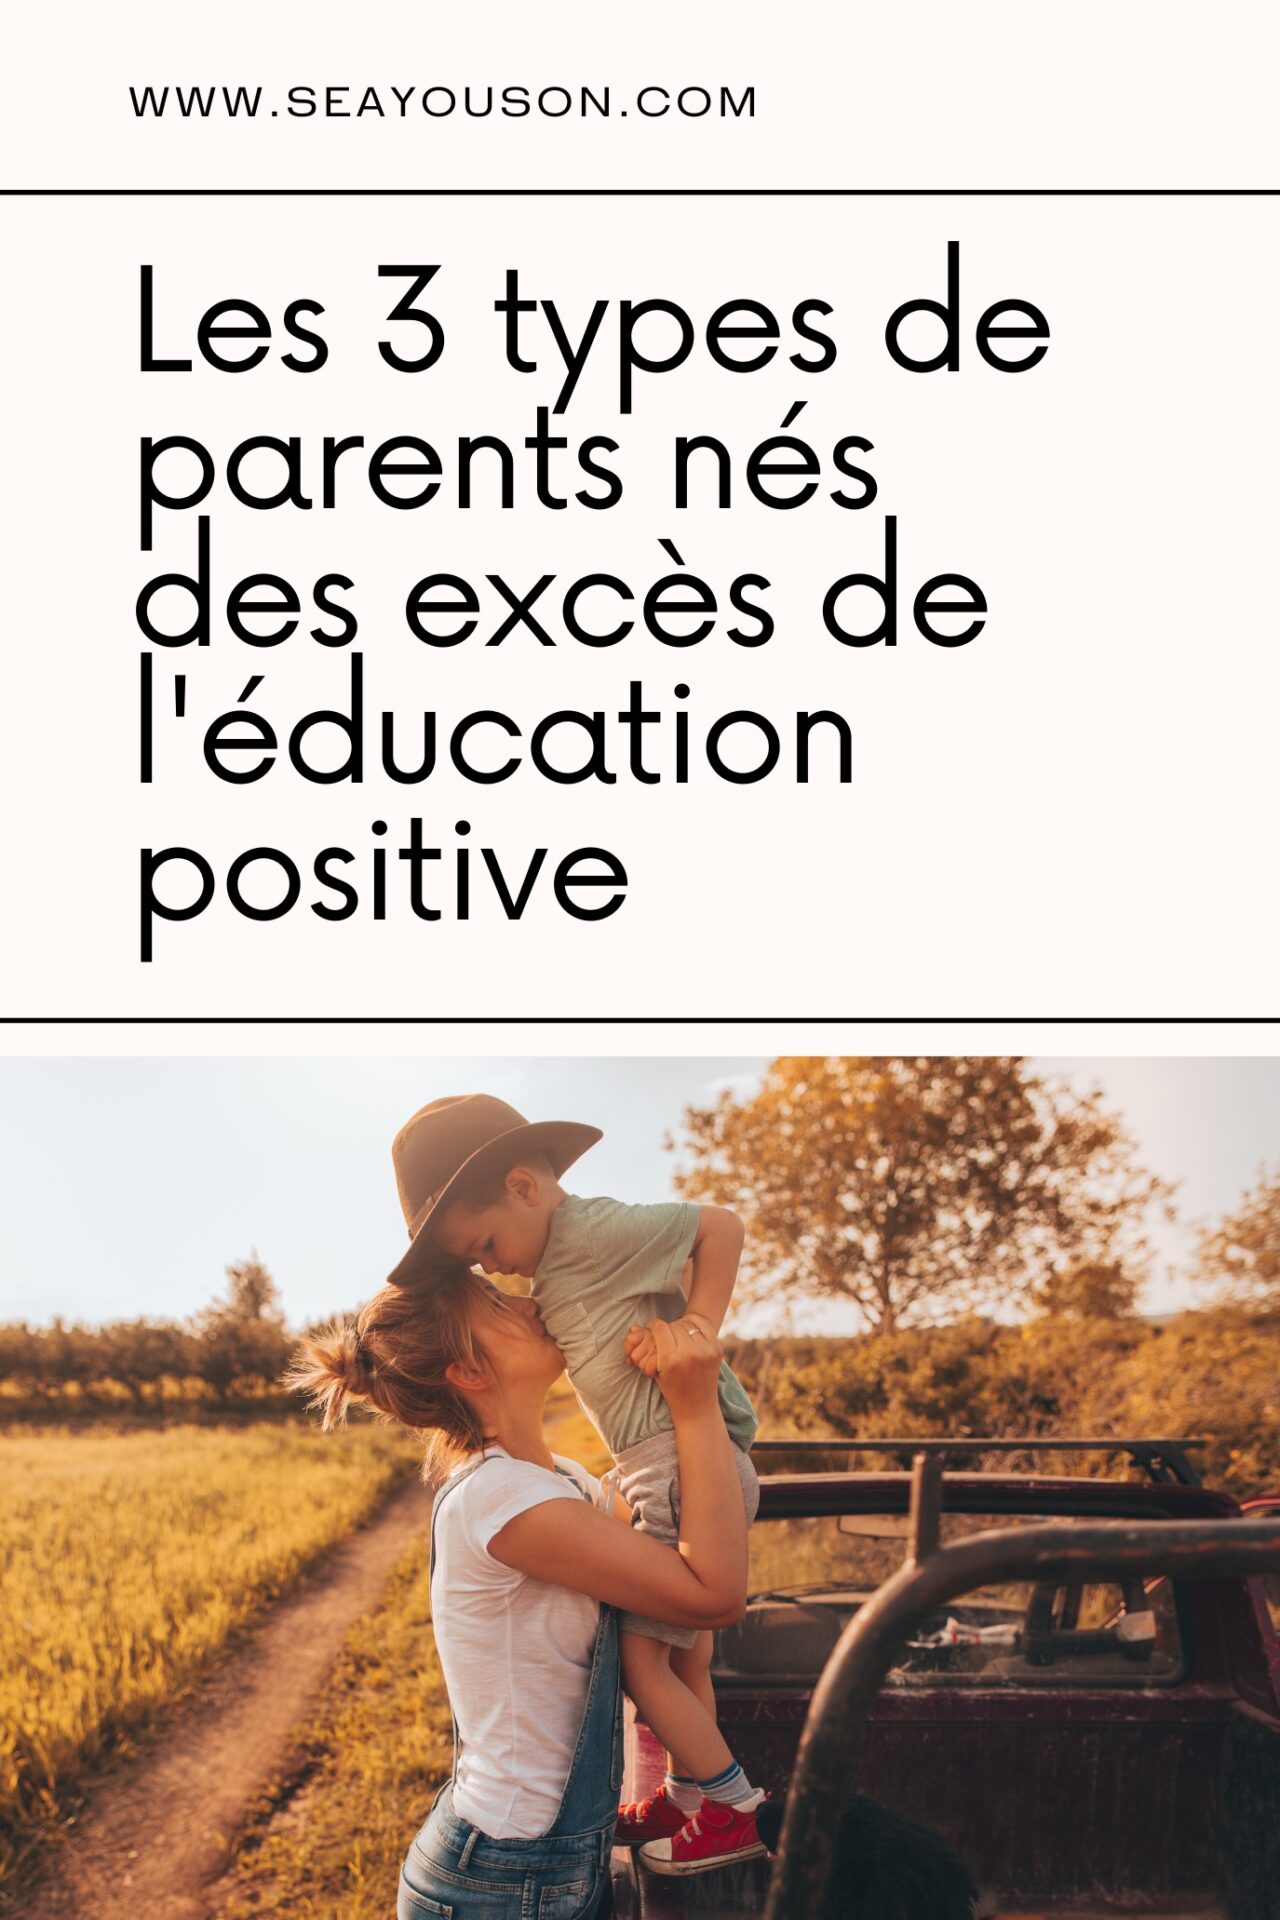 Education positive, attention danger? Les trois types de parents nés des excès de l'éducation positive.